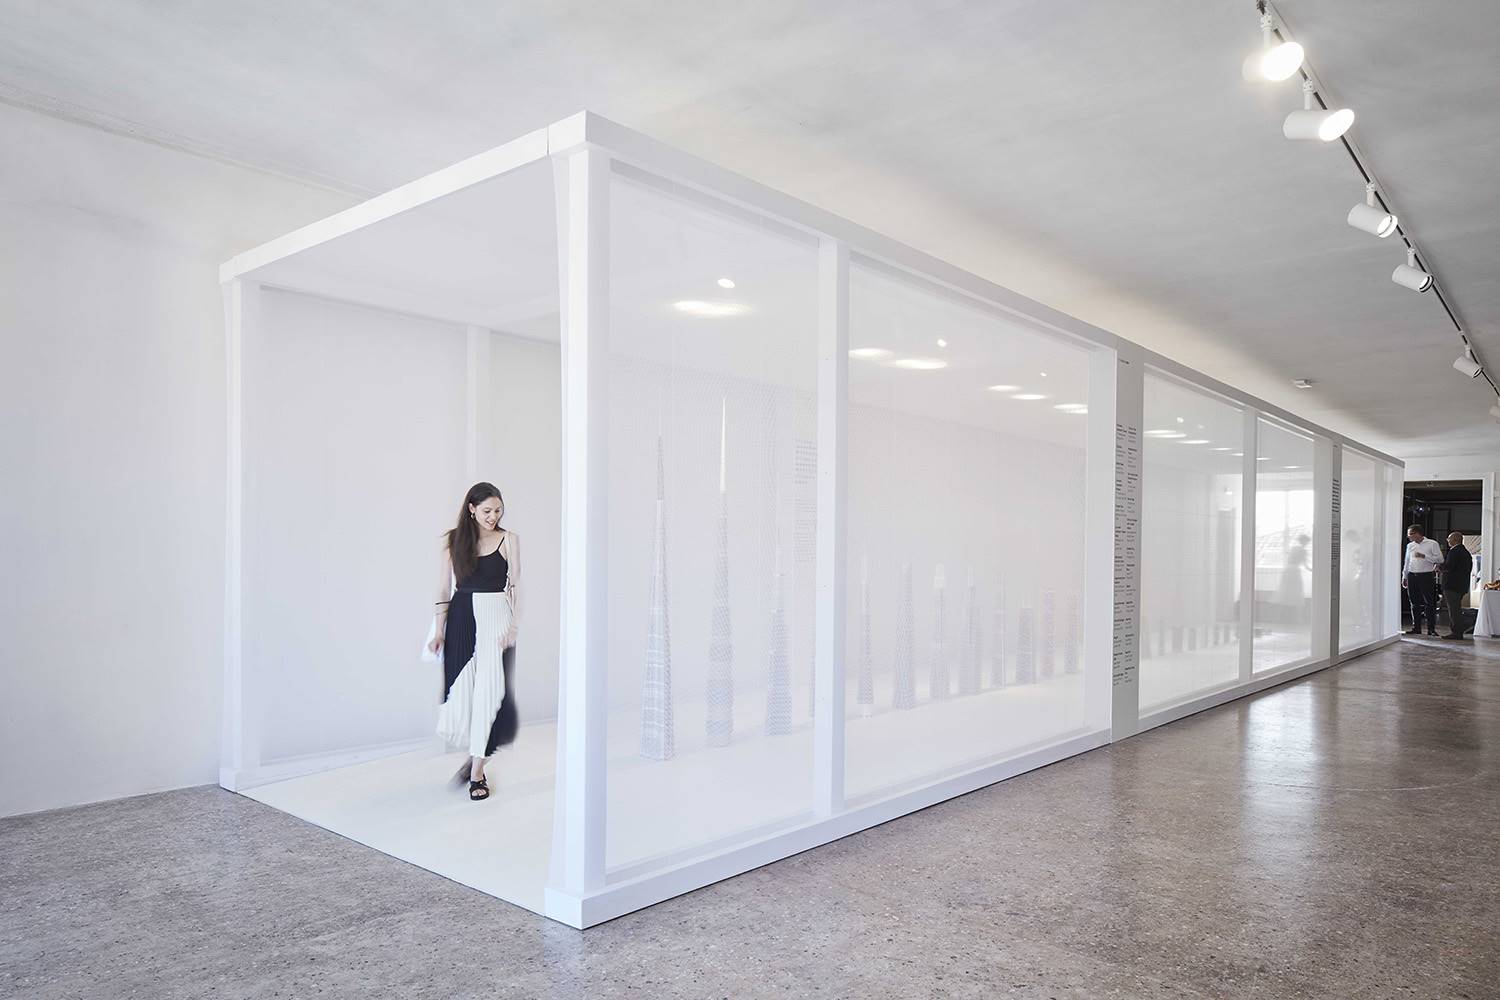 Exposición "Scale+Form", European Cultural Center, Bienal de Venecia, 2018.